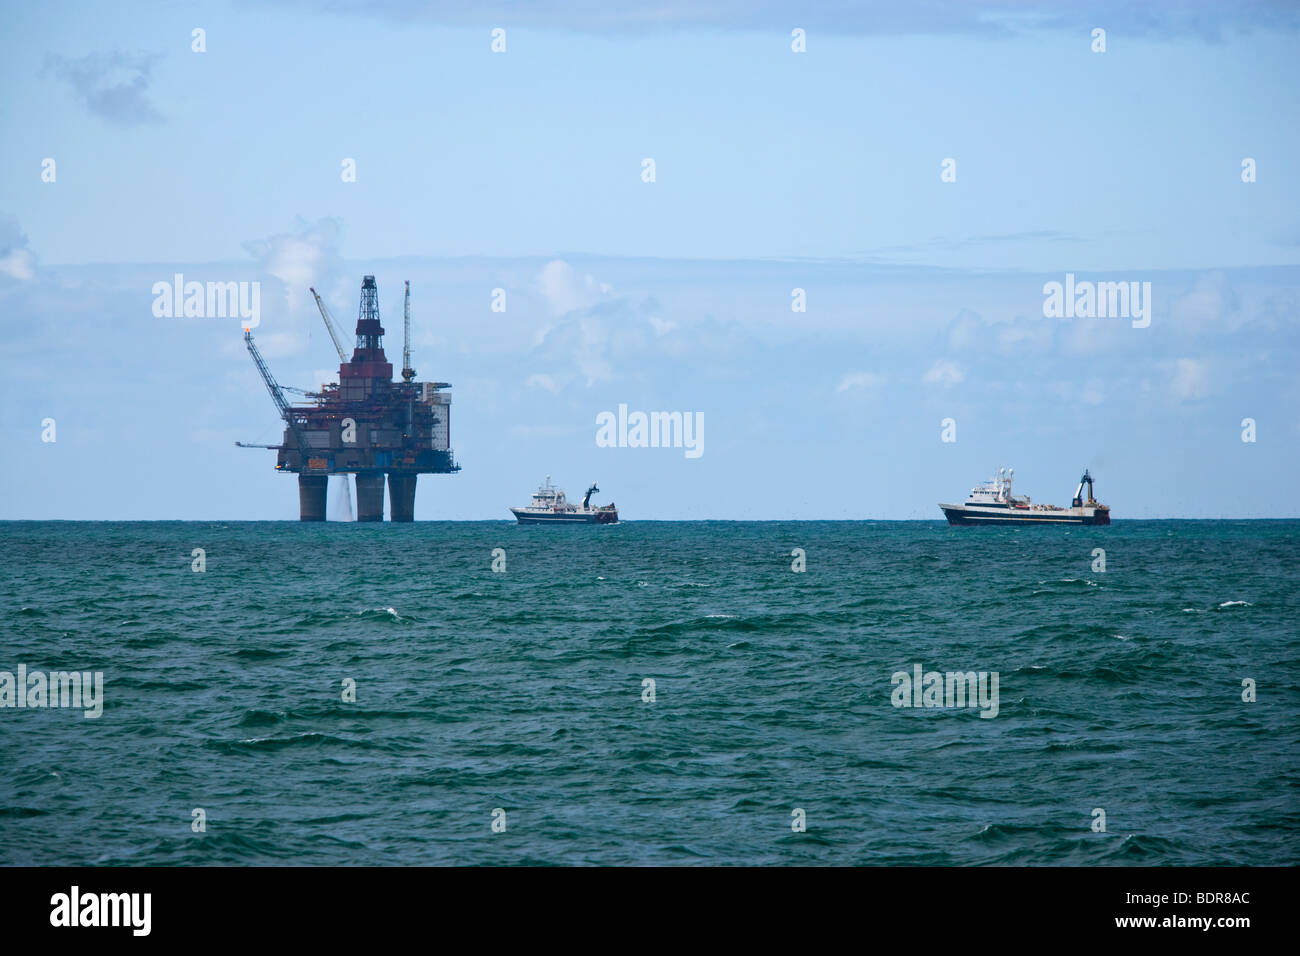 Gullfack la plate-forme pétrolière Banque D'Images